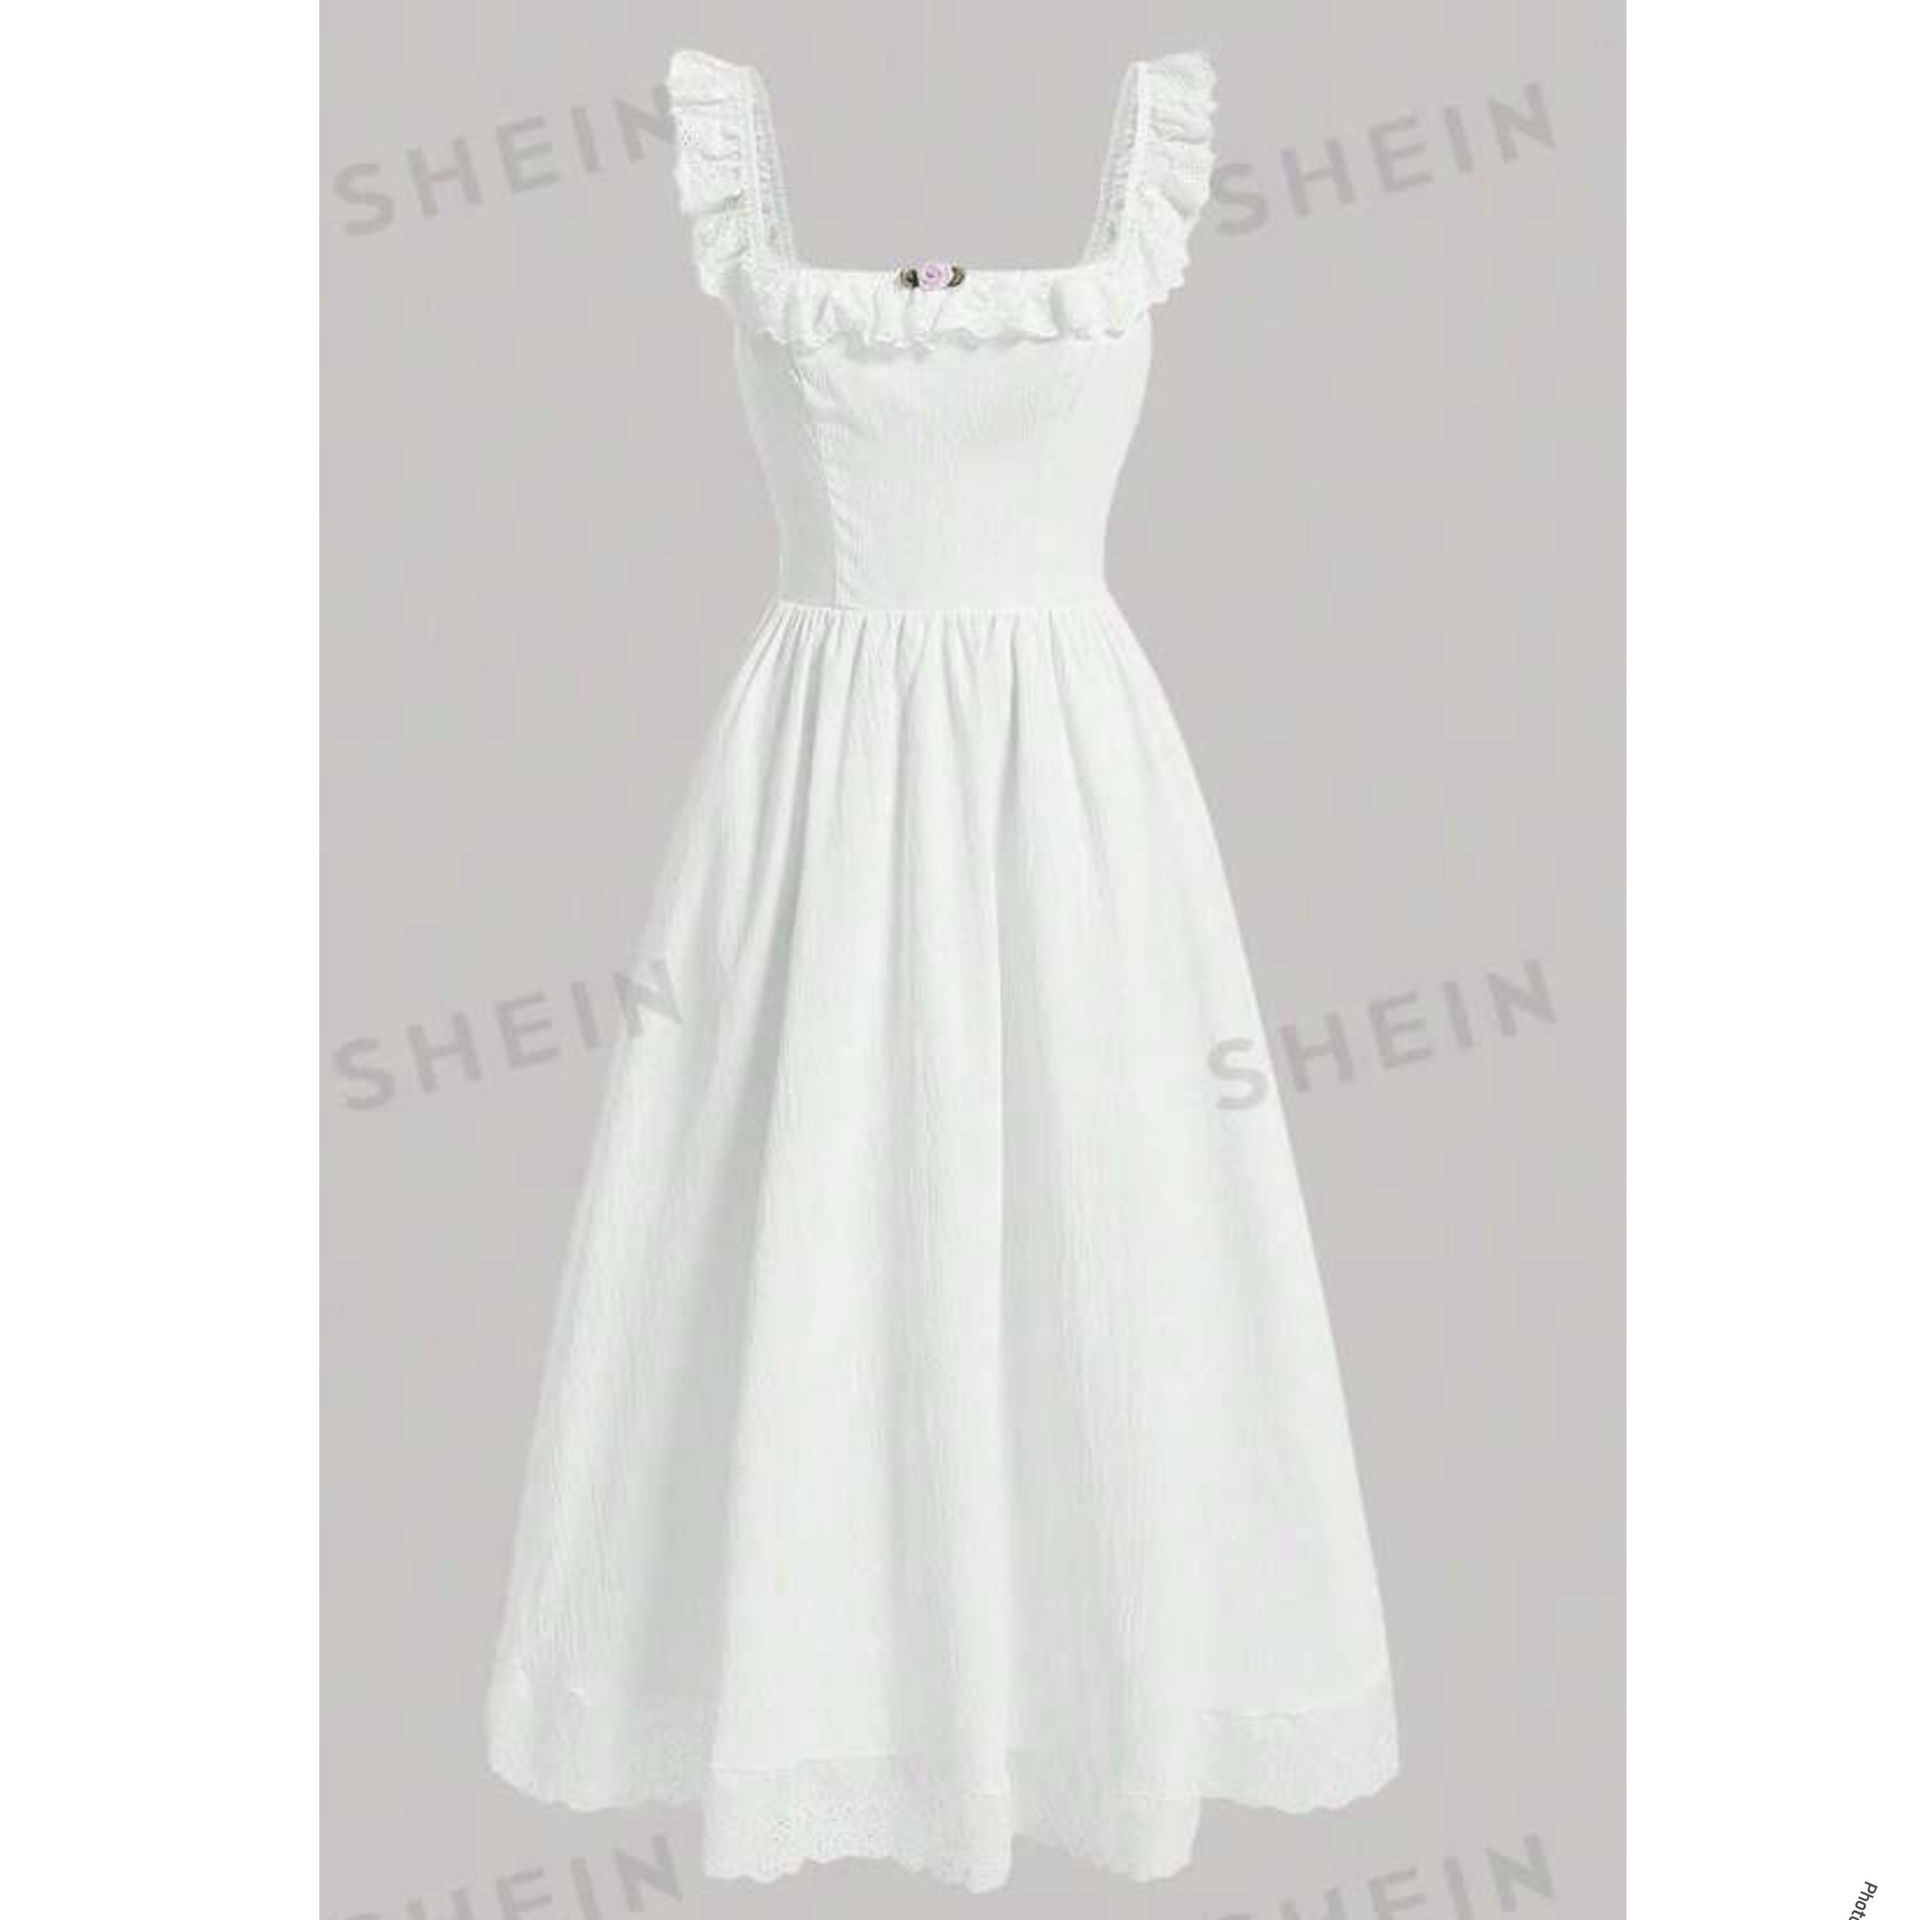 Beautiful White Dress (SIZE L)